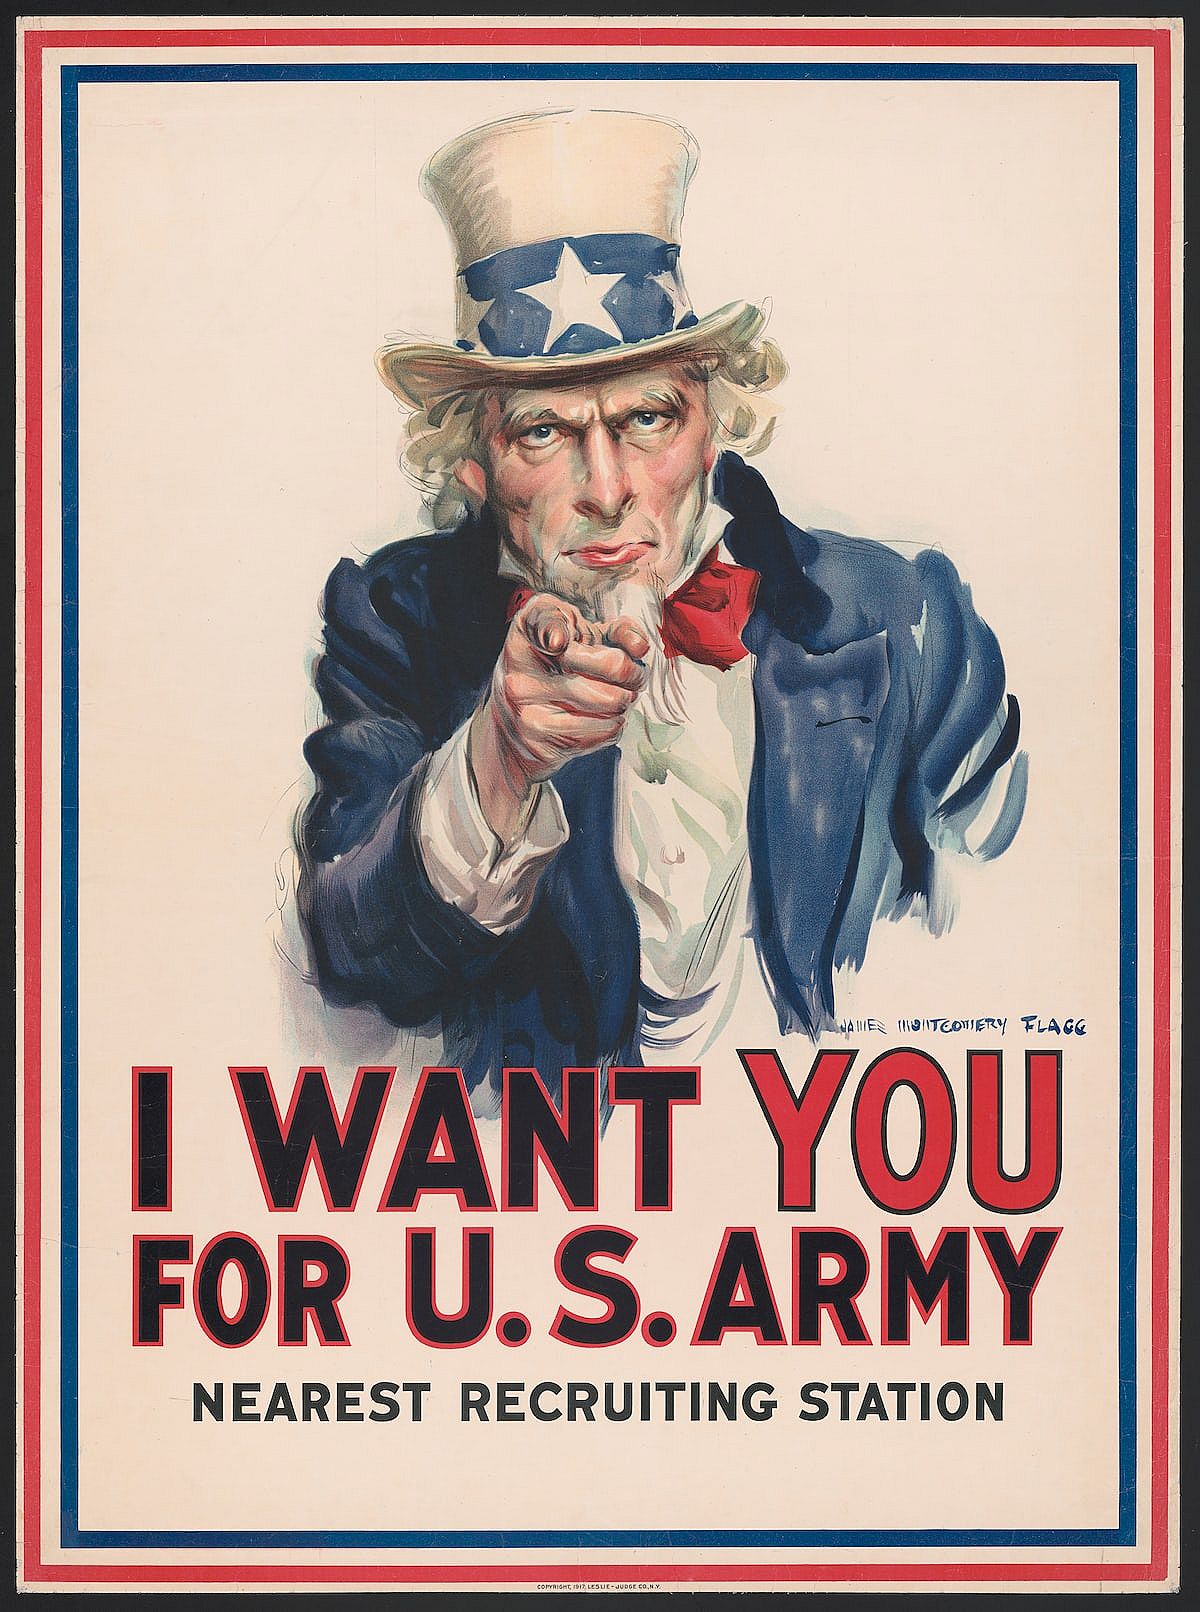 Искам те за армията на САЩ: най-близката станция за набиране на войници. Плакат на Джеймс Монтгомъри Флаг, около 1917 г. От плакатите: Световната войн...